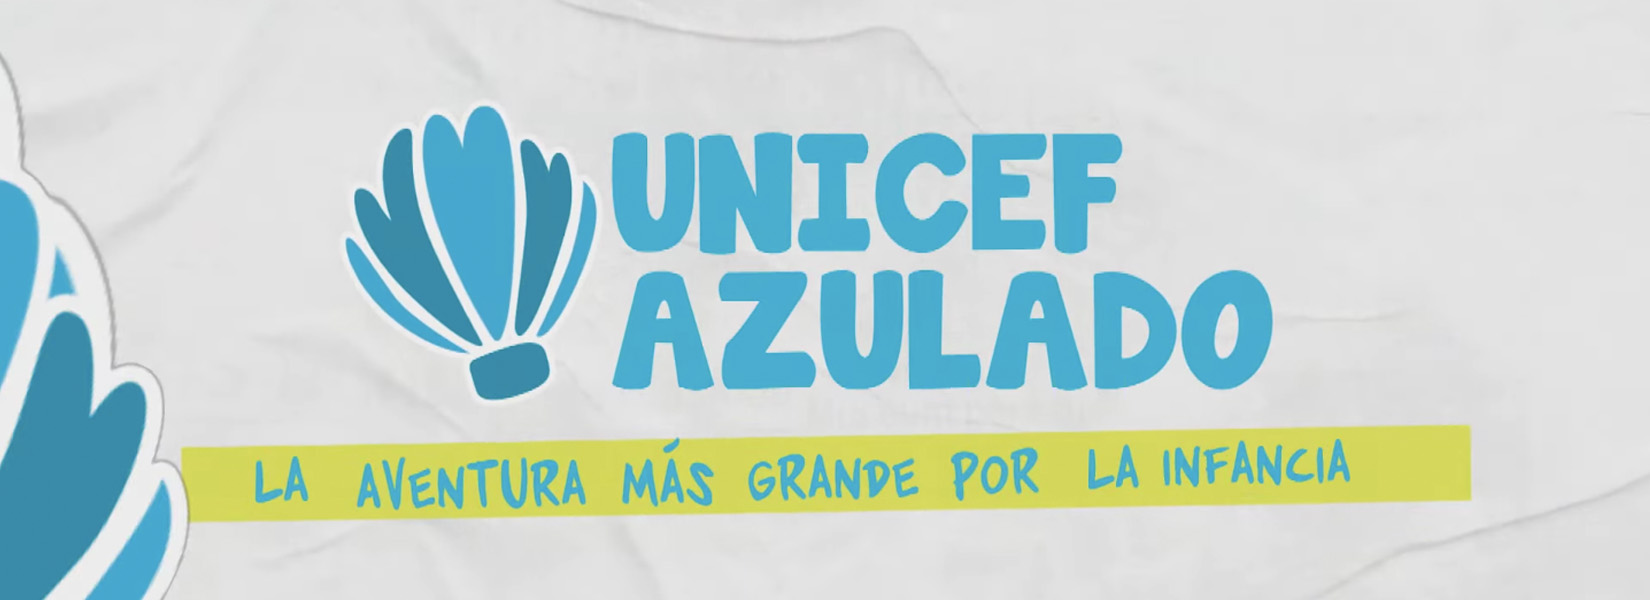 Caracol Televisión y UNICEF lanzan su serie digital  #UNICEFAZULADO